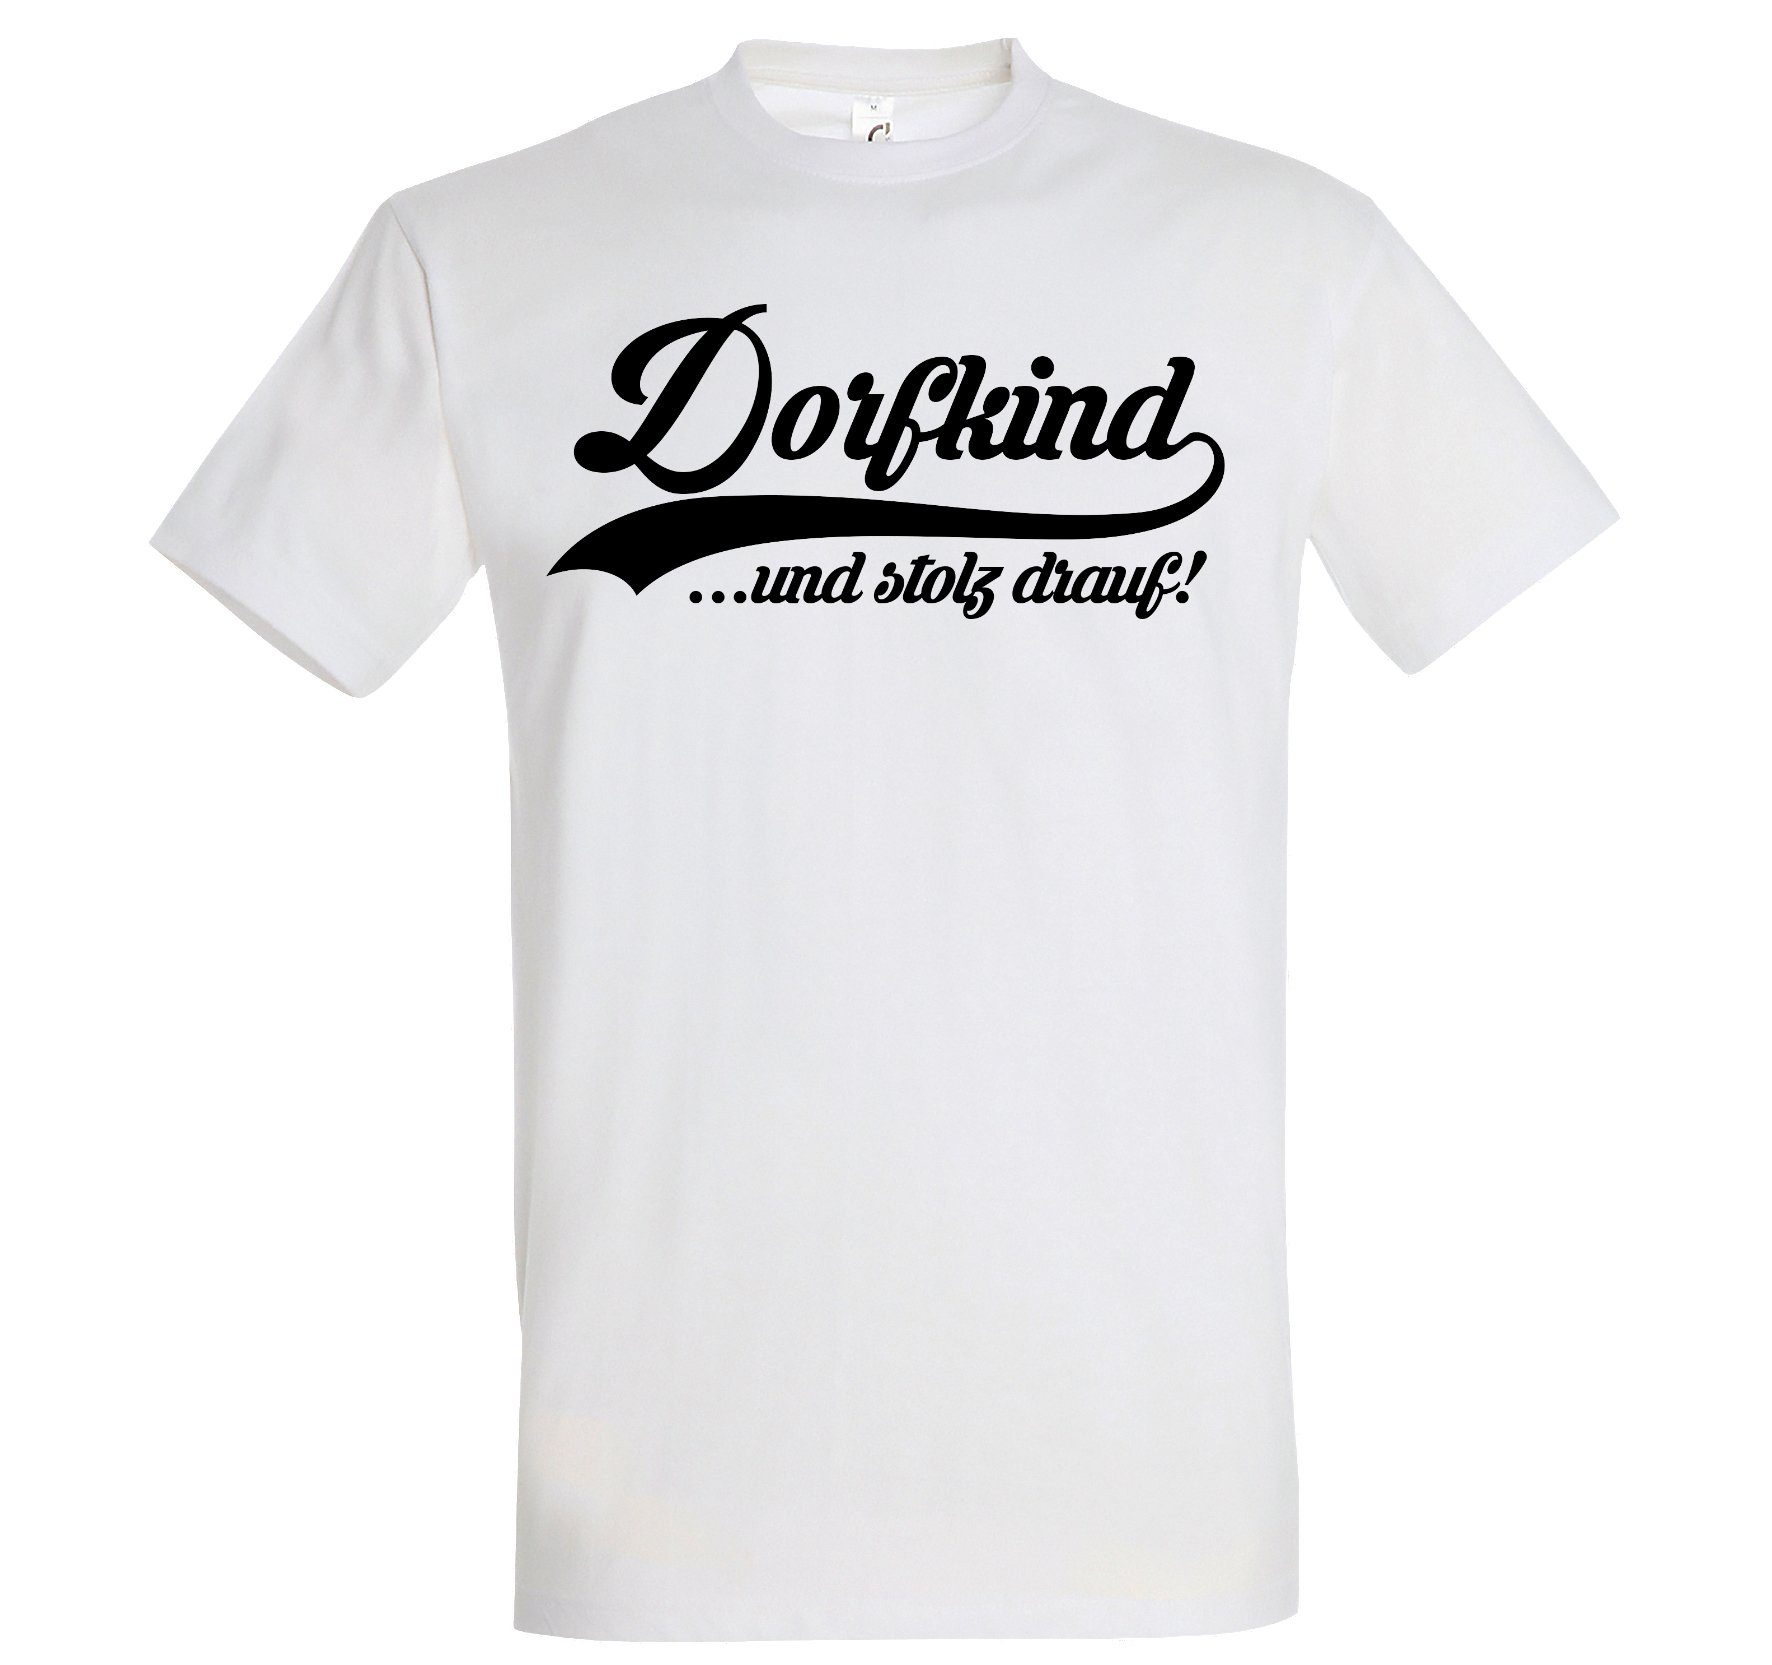 mit Print-Shirt Designz Youth lustigem Herren Weiß T-Shirt Spruch Dorfkind